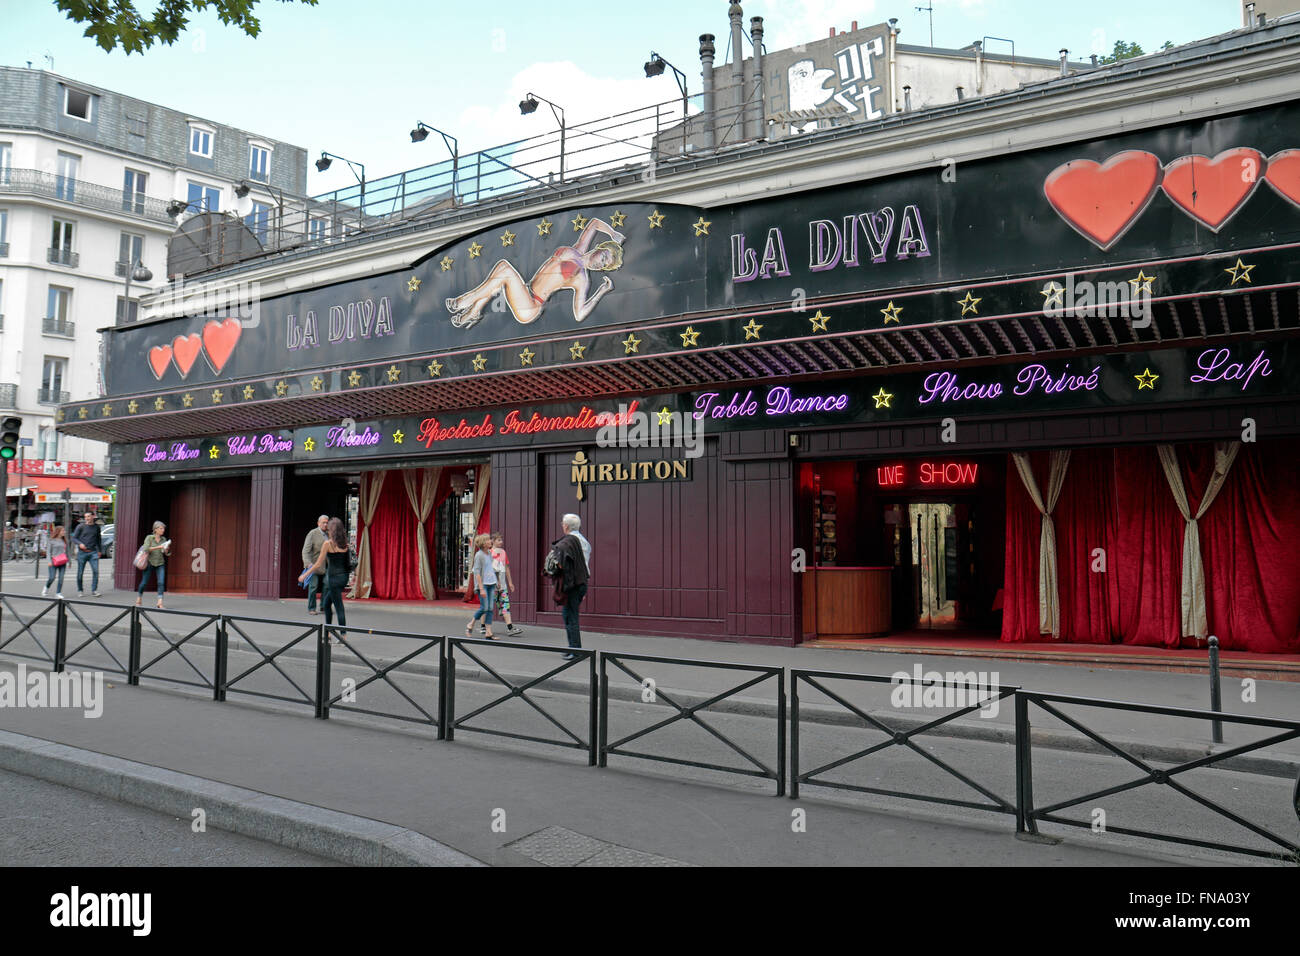 L'hôtel La Diva live dancing Club (ou club de bande) à Paris, France. Banque D'Images